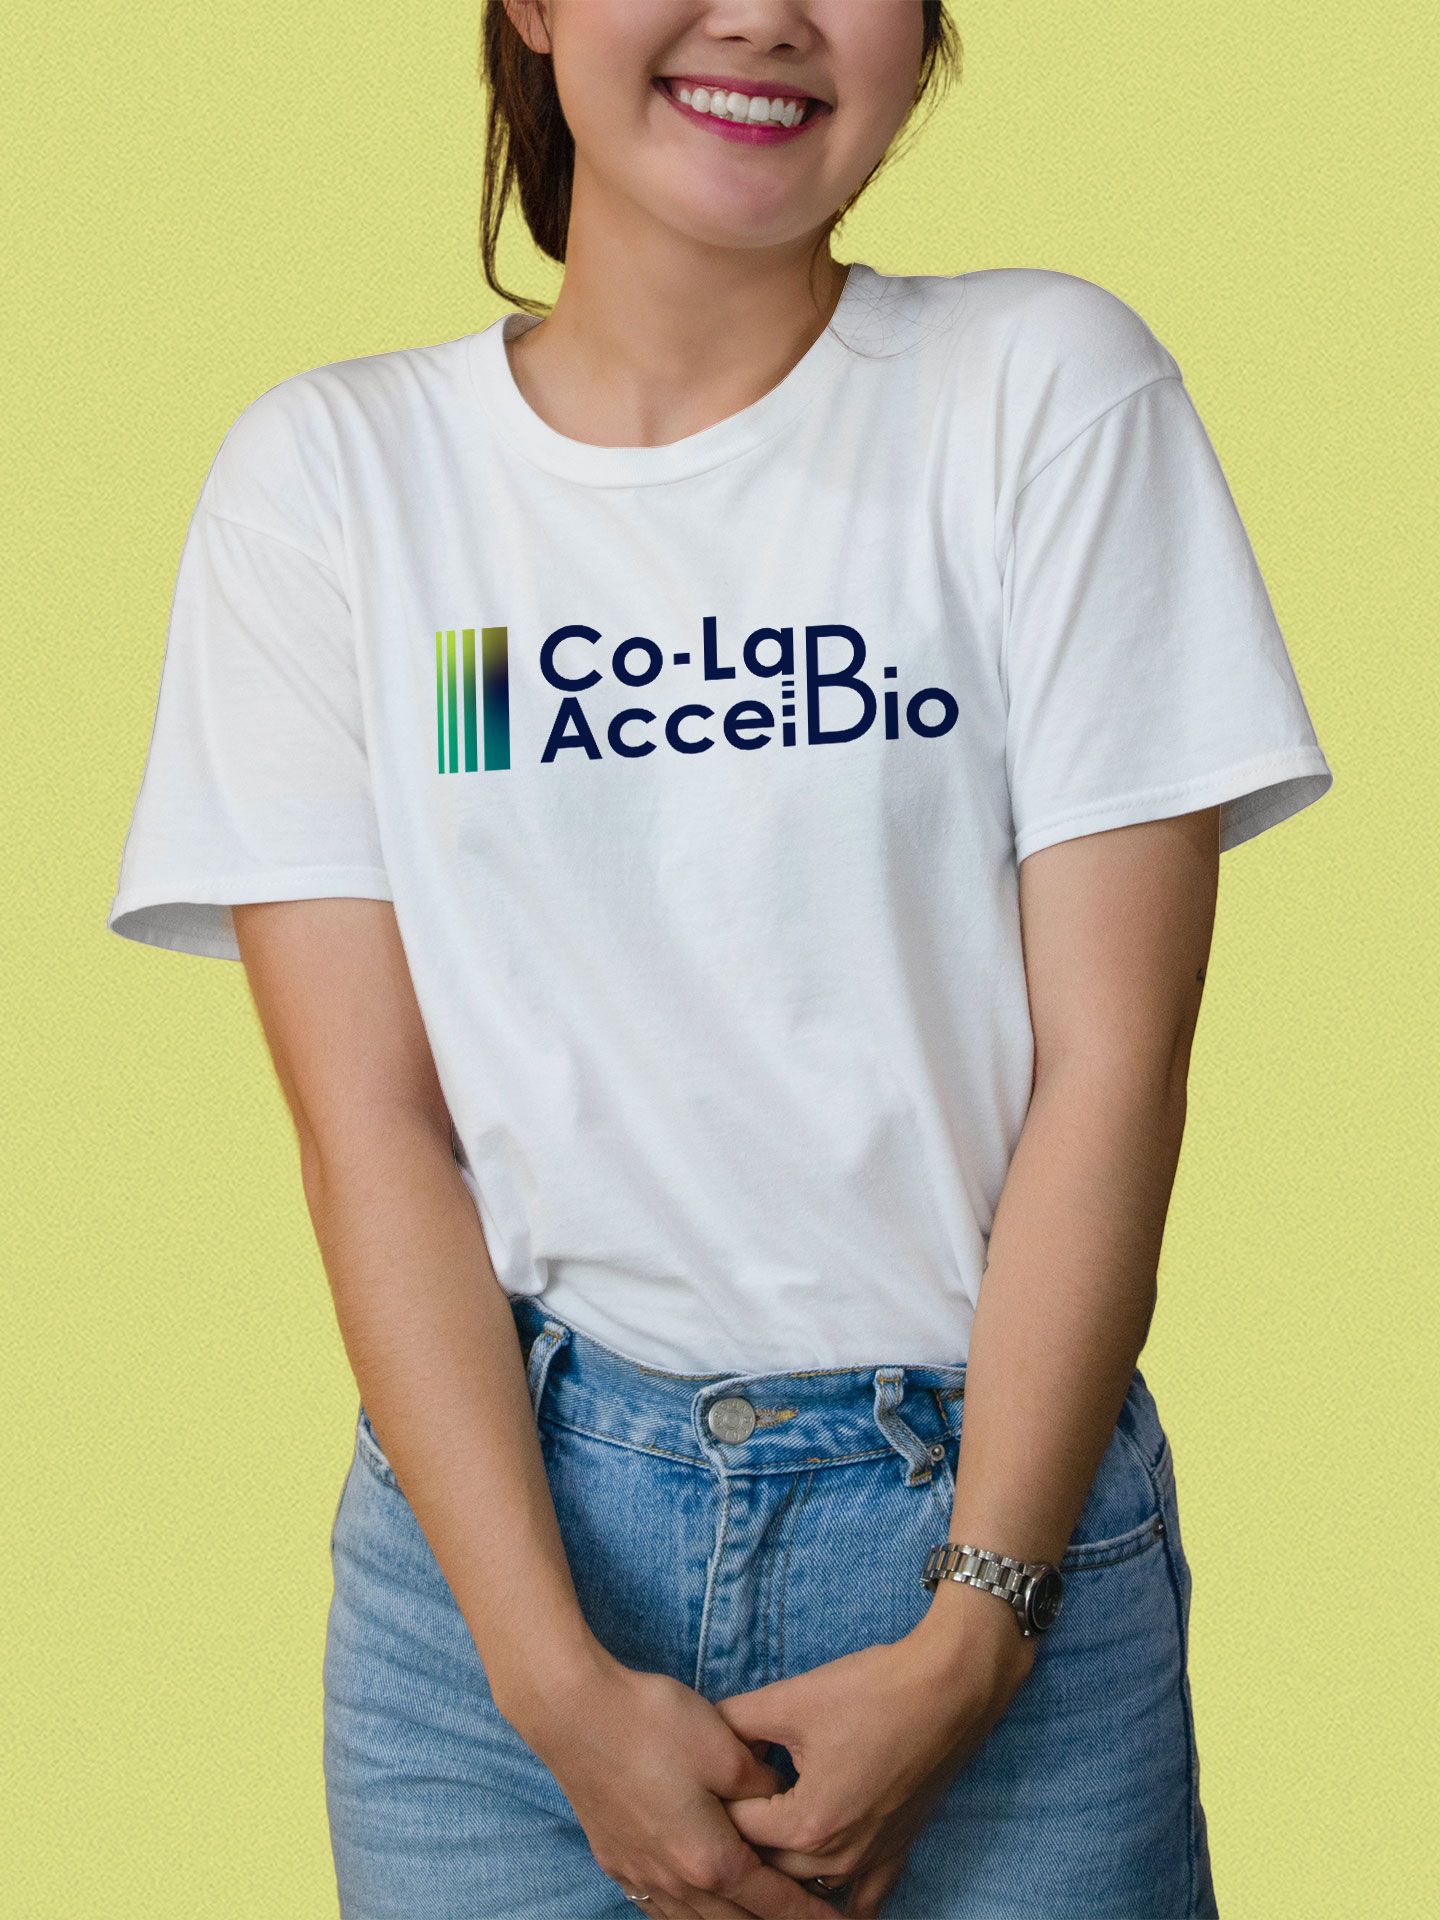 iMM - Co-Lab AccelBio - Tshirt